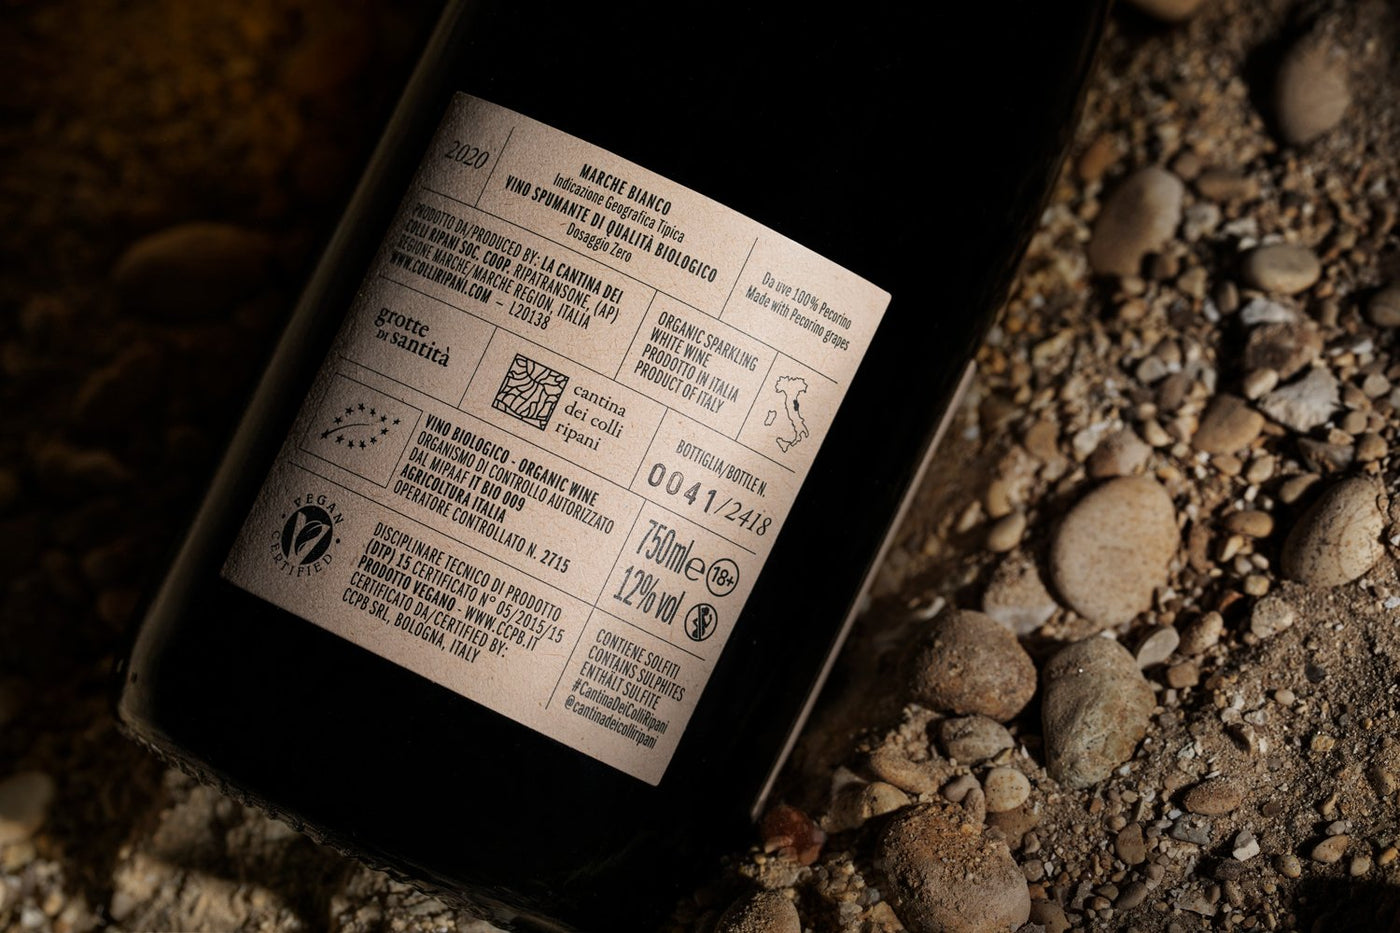 Grotte di Santità - Ancestrale BIO Sparkling Marche IGT Bianco Wine Zero Dosage from 100% Pecorino grapes 2020